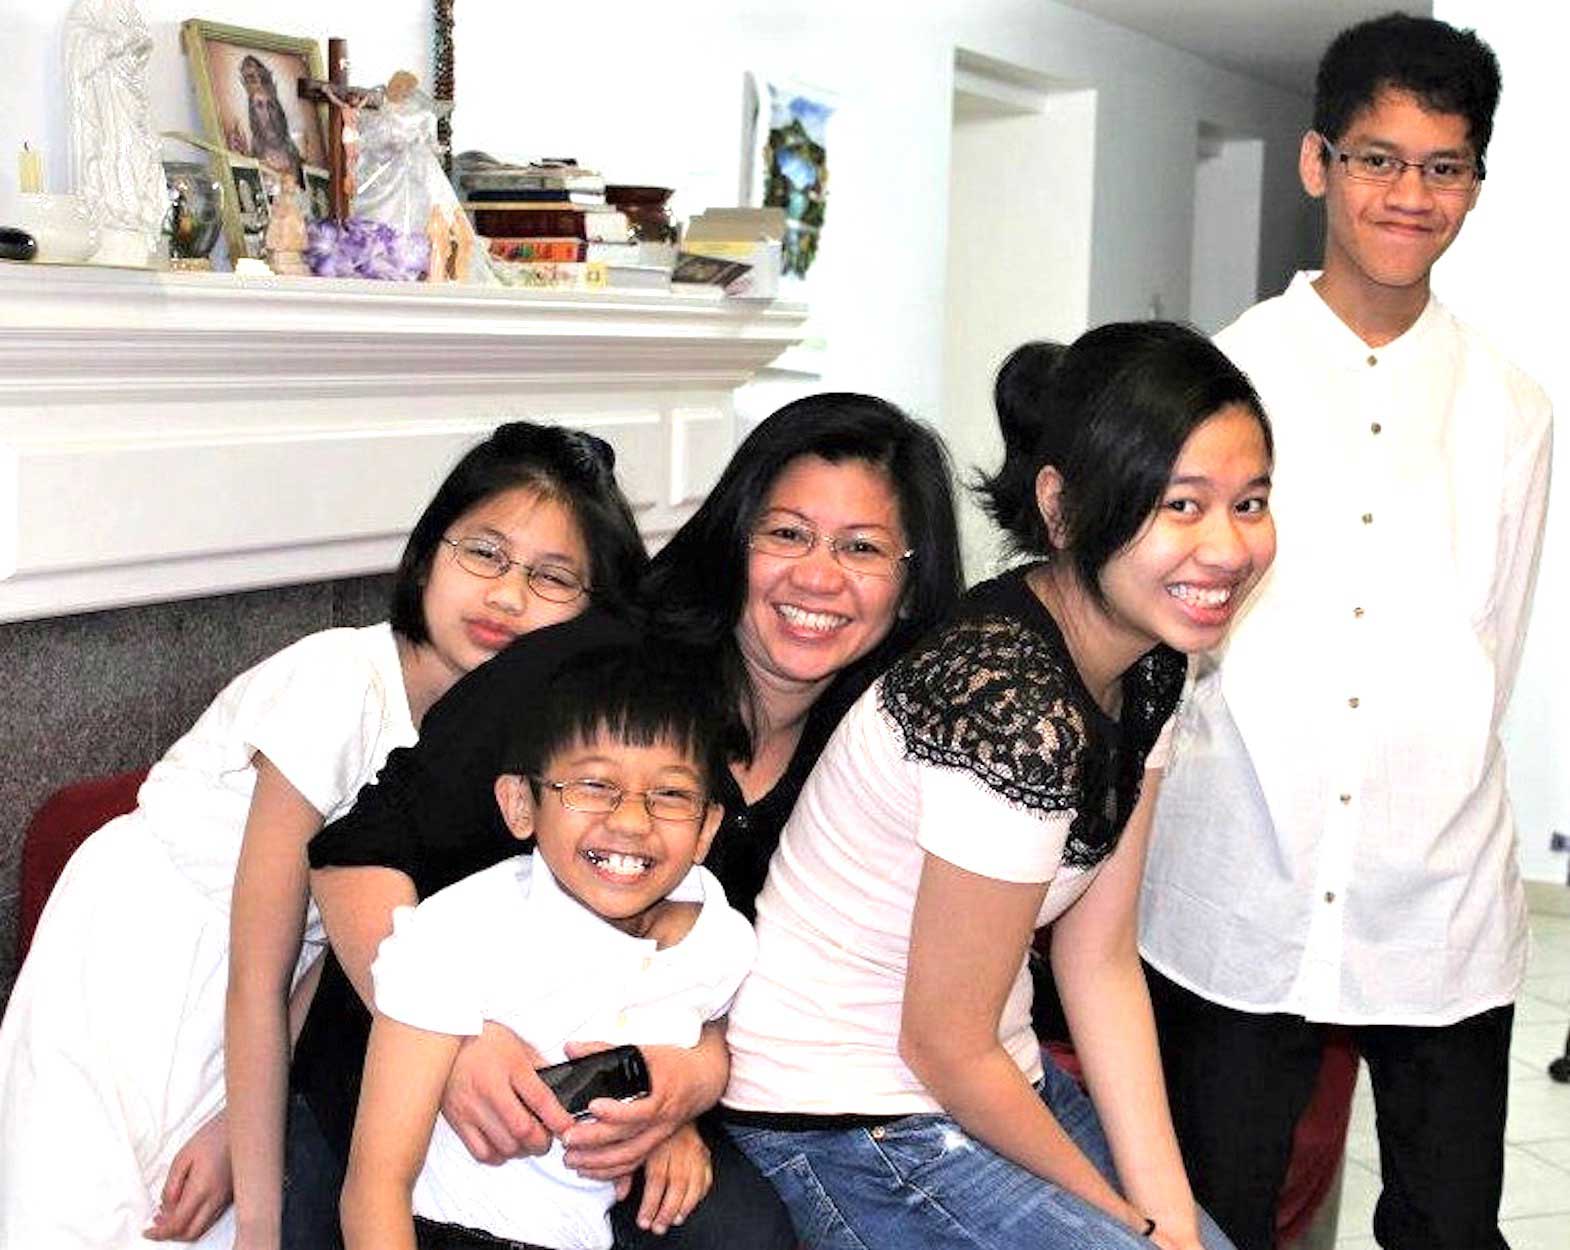 A Filipina caregivers success story in Canada Inquirer